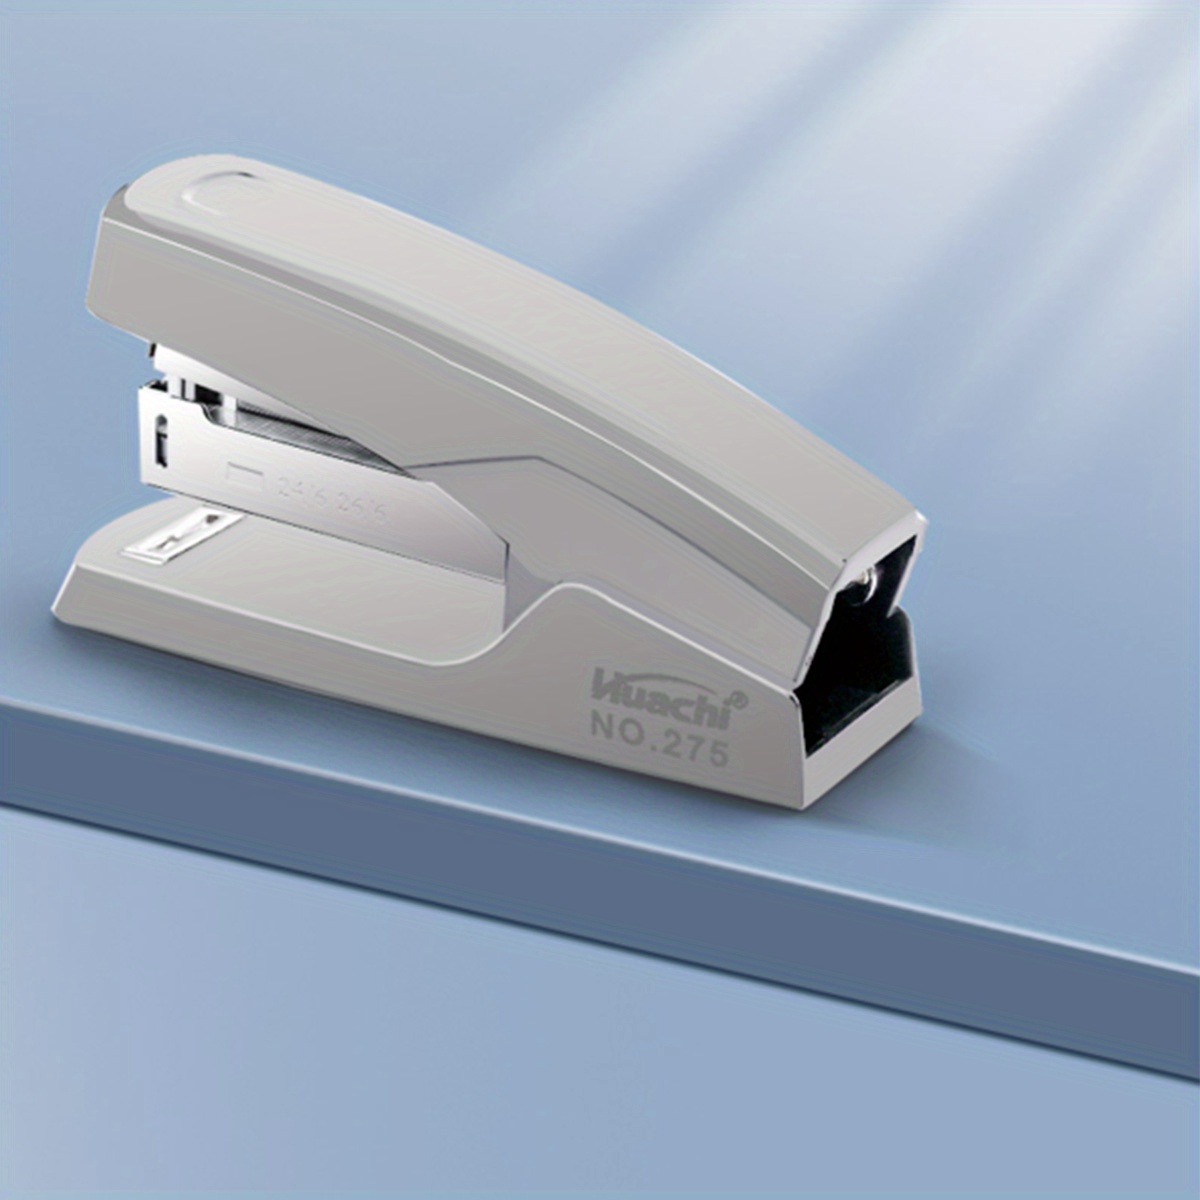 Swingline® Durable Desk Stapler